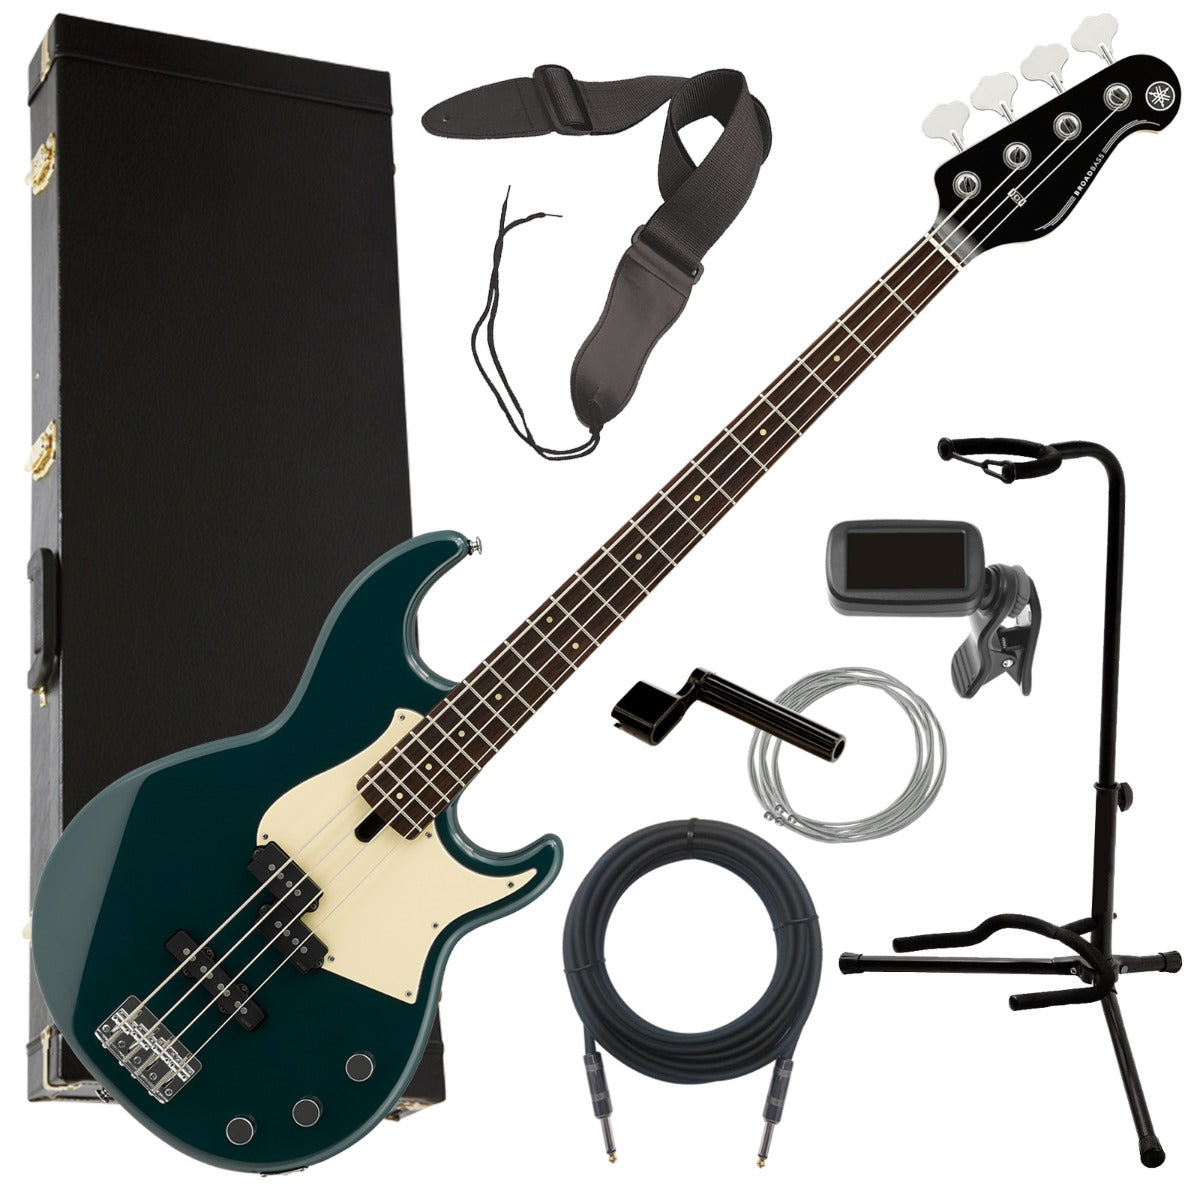 Yamaha BB434 Electric Bass Guitar - Teal Blue BASS ESSENTIALS